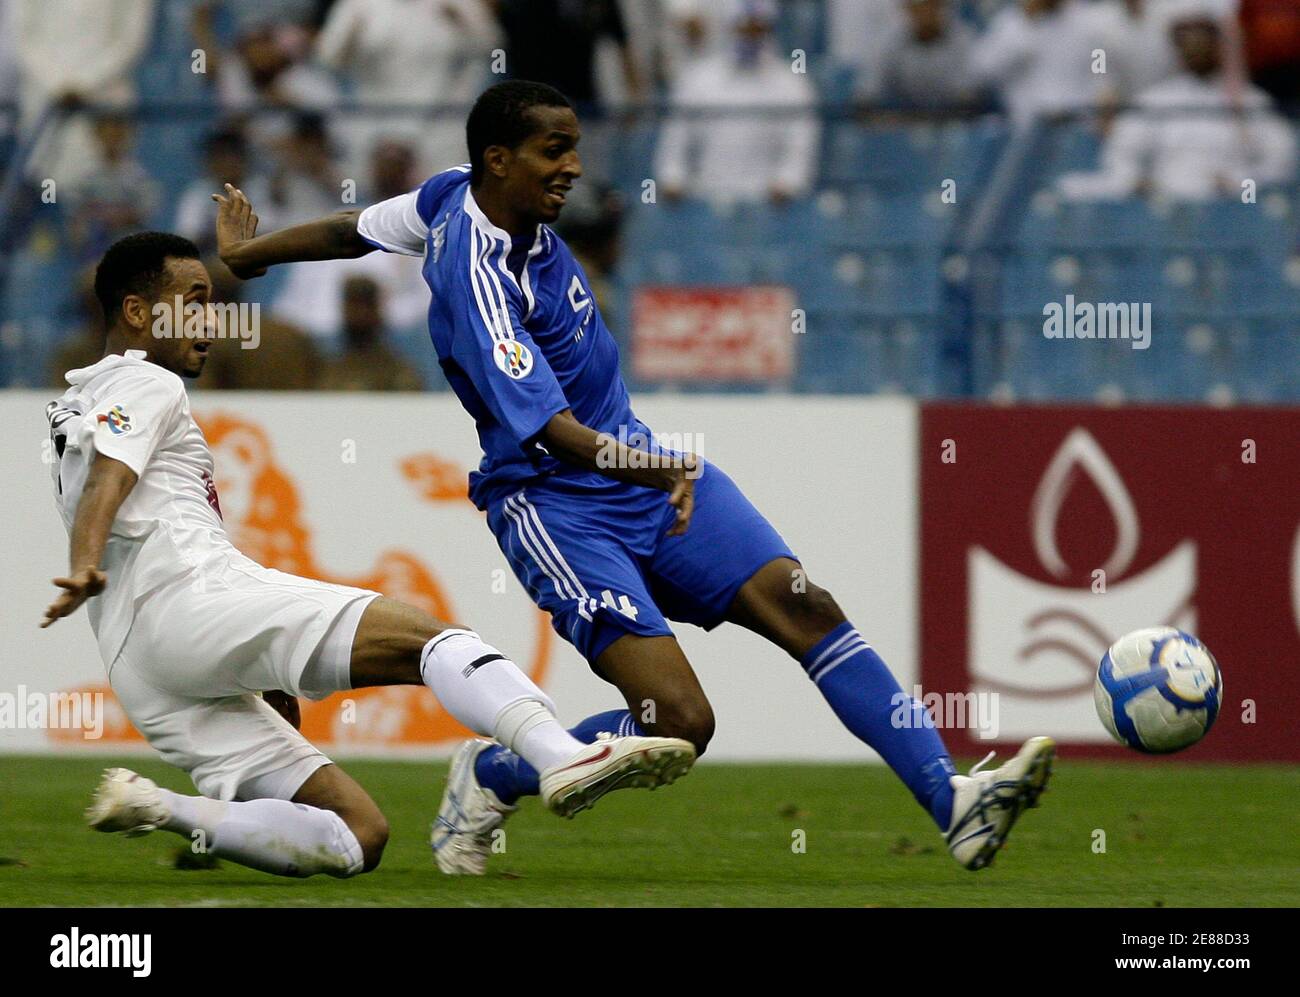 Saudi Al-Hilals Abdullah Alzori (R) kämpft mit Qatar Al Sadd Majed Mohammed während ihres AFC Champions League Spiels im King Fahad Stadion in Riad am 13. April 2010 um den Ball. REUTERS/Fahad Shadeed (SAUDI-ARABIEN - Tags: FUSSBALL) Stockfoto